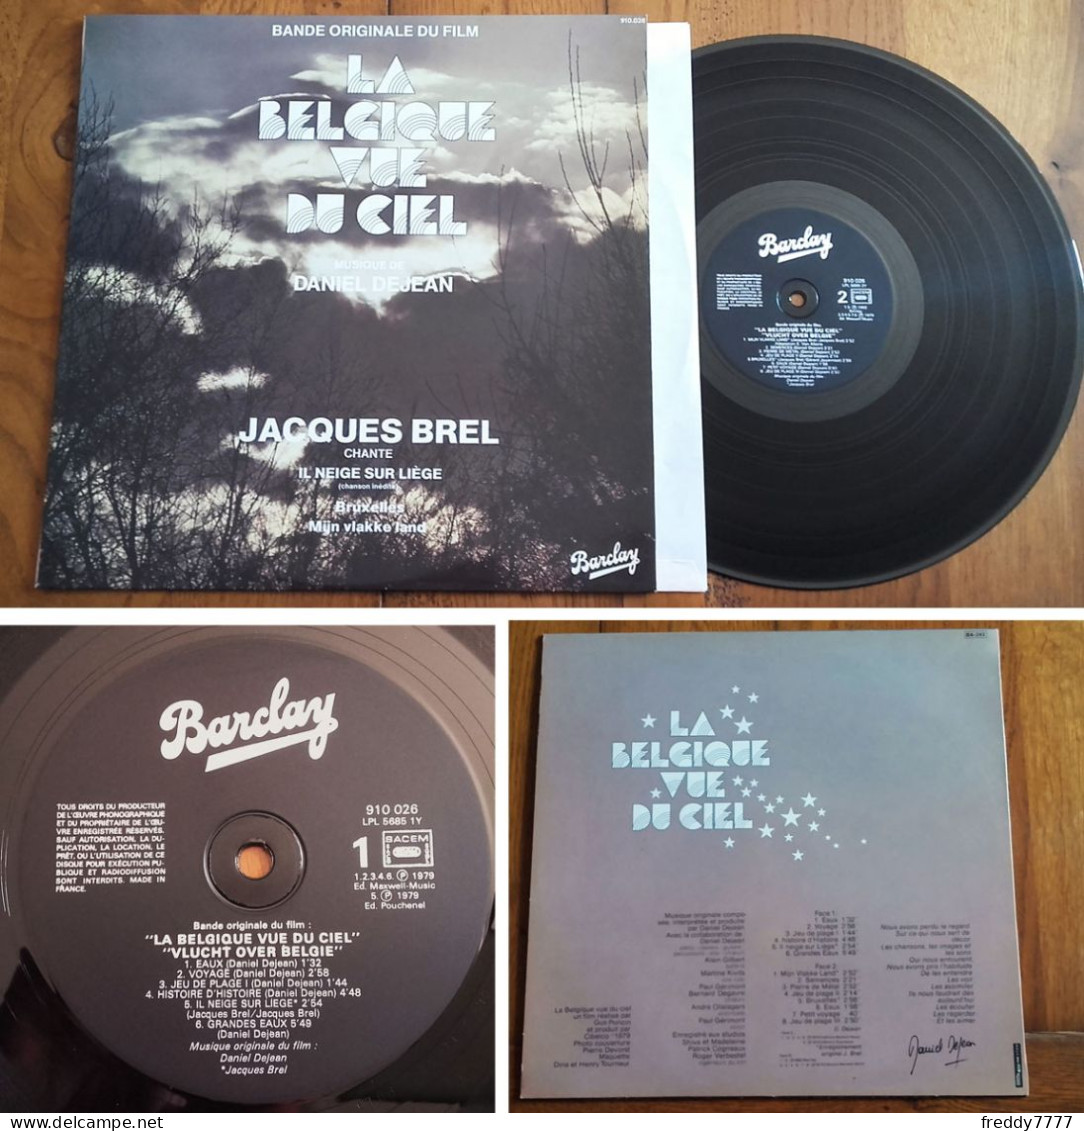 RARE French LP 33t RPM (12") BOF OST «LA BELGIQUE VUE DU CIEL» (Jacques Brel, 1980) - Filmmusik